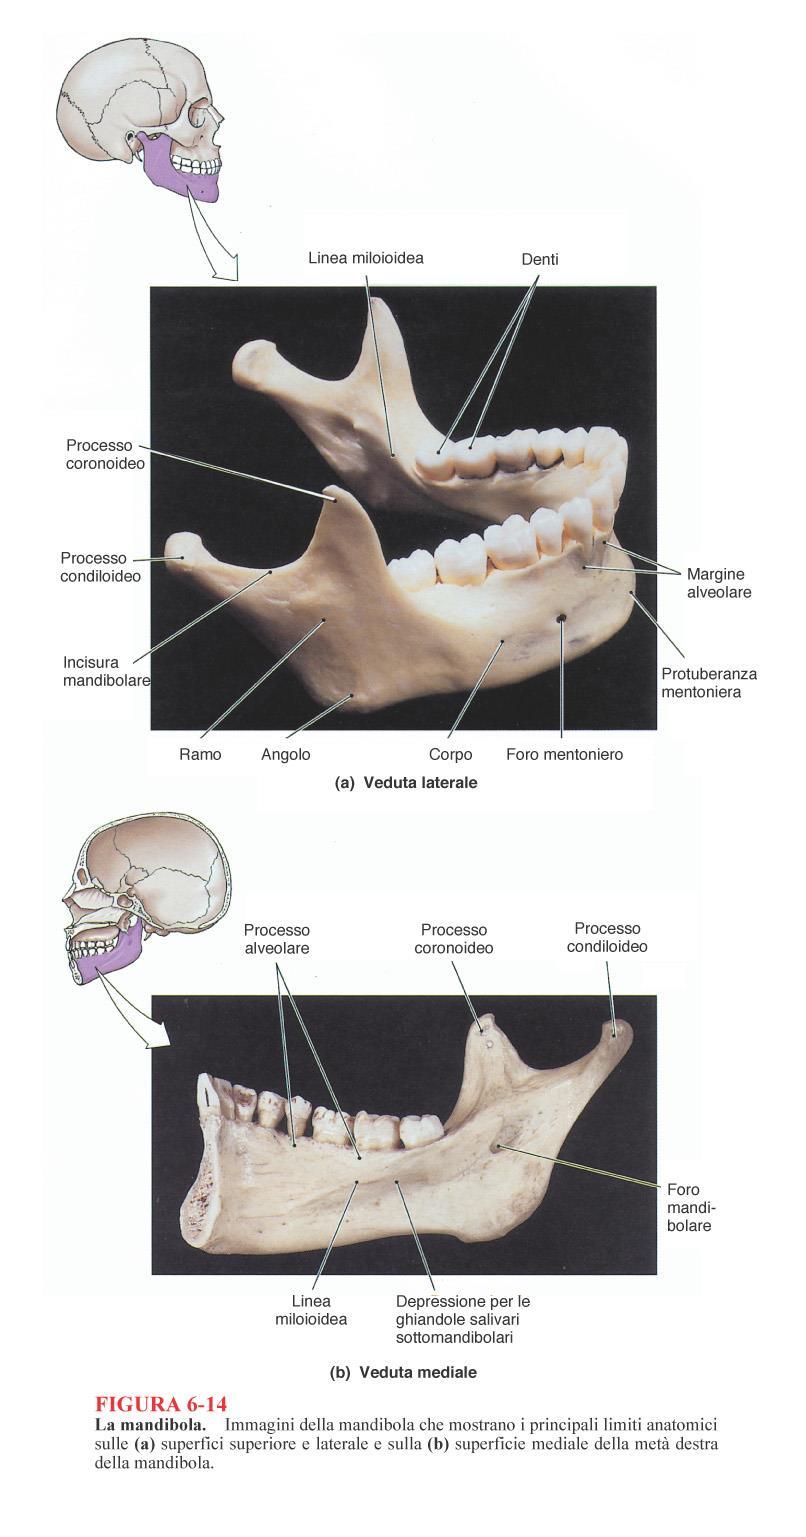 Mandibola osso impari, parte inferiore della faccia -Si articola con il temporale ATM unica